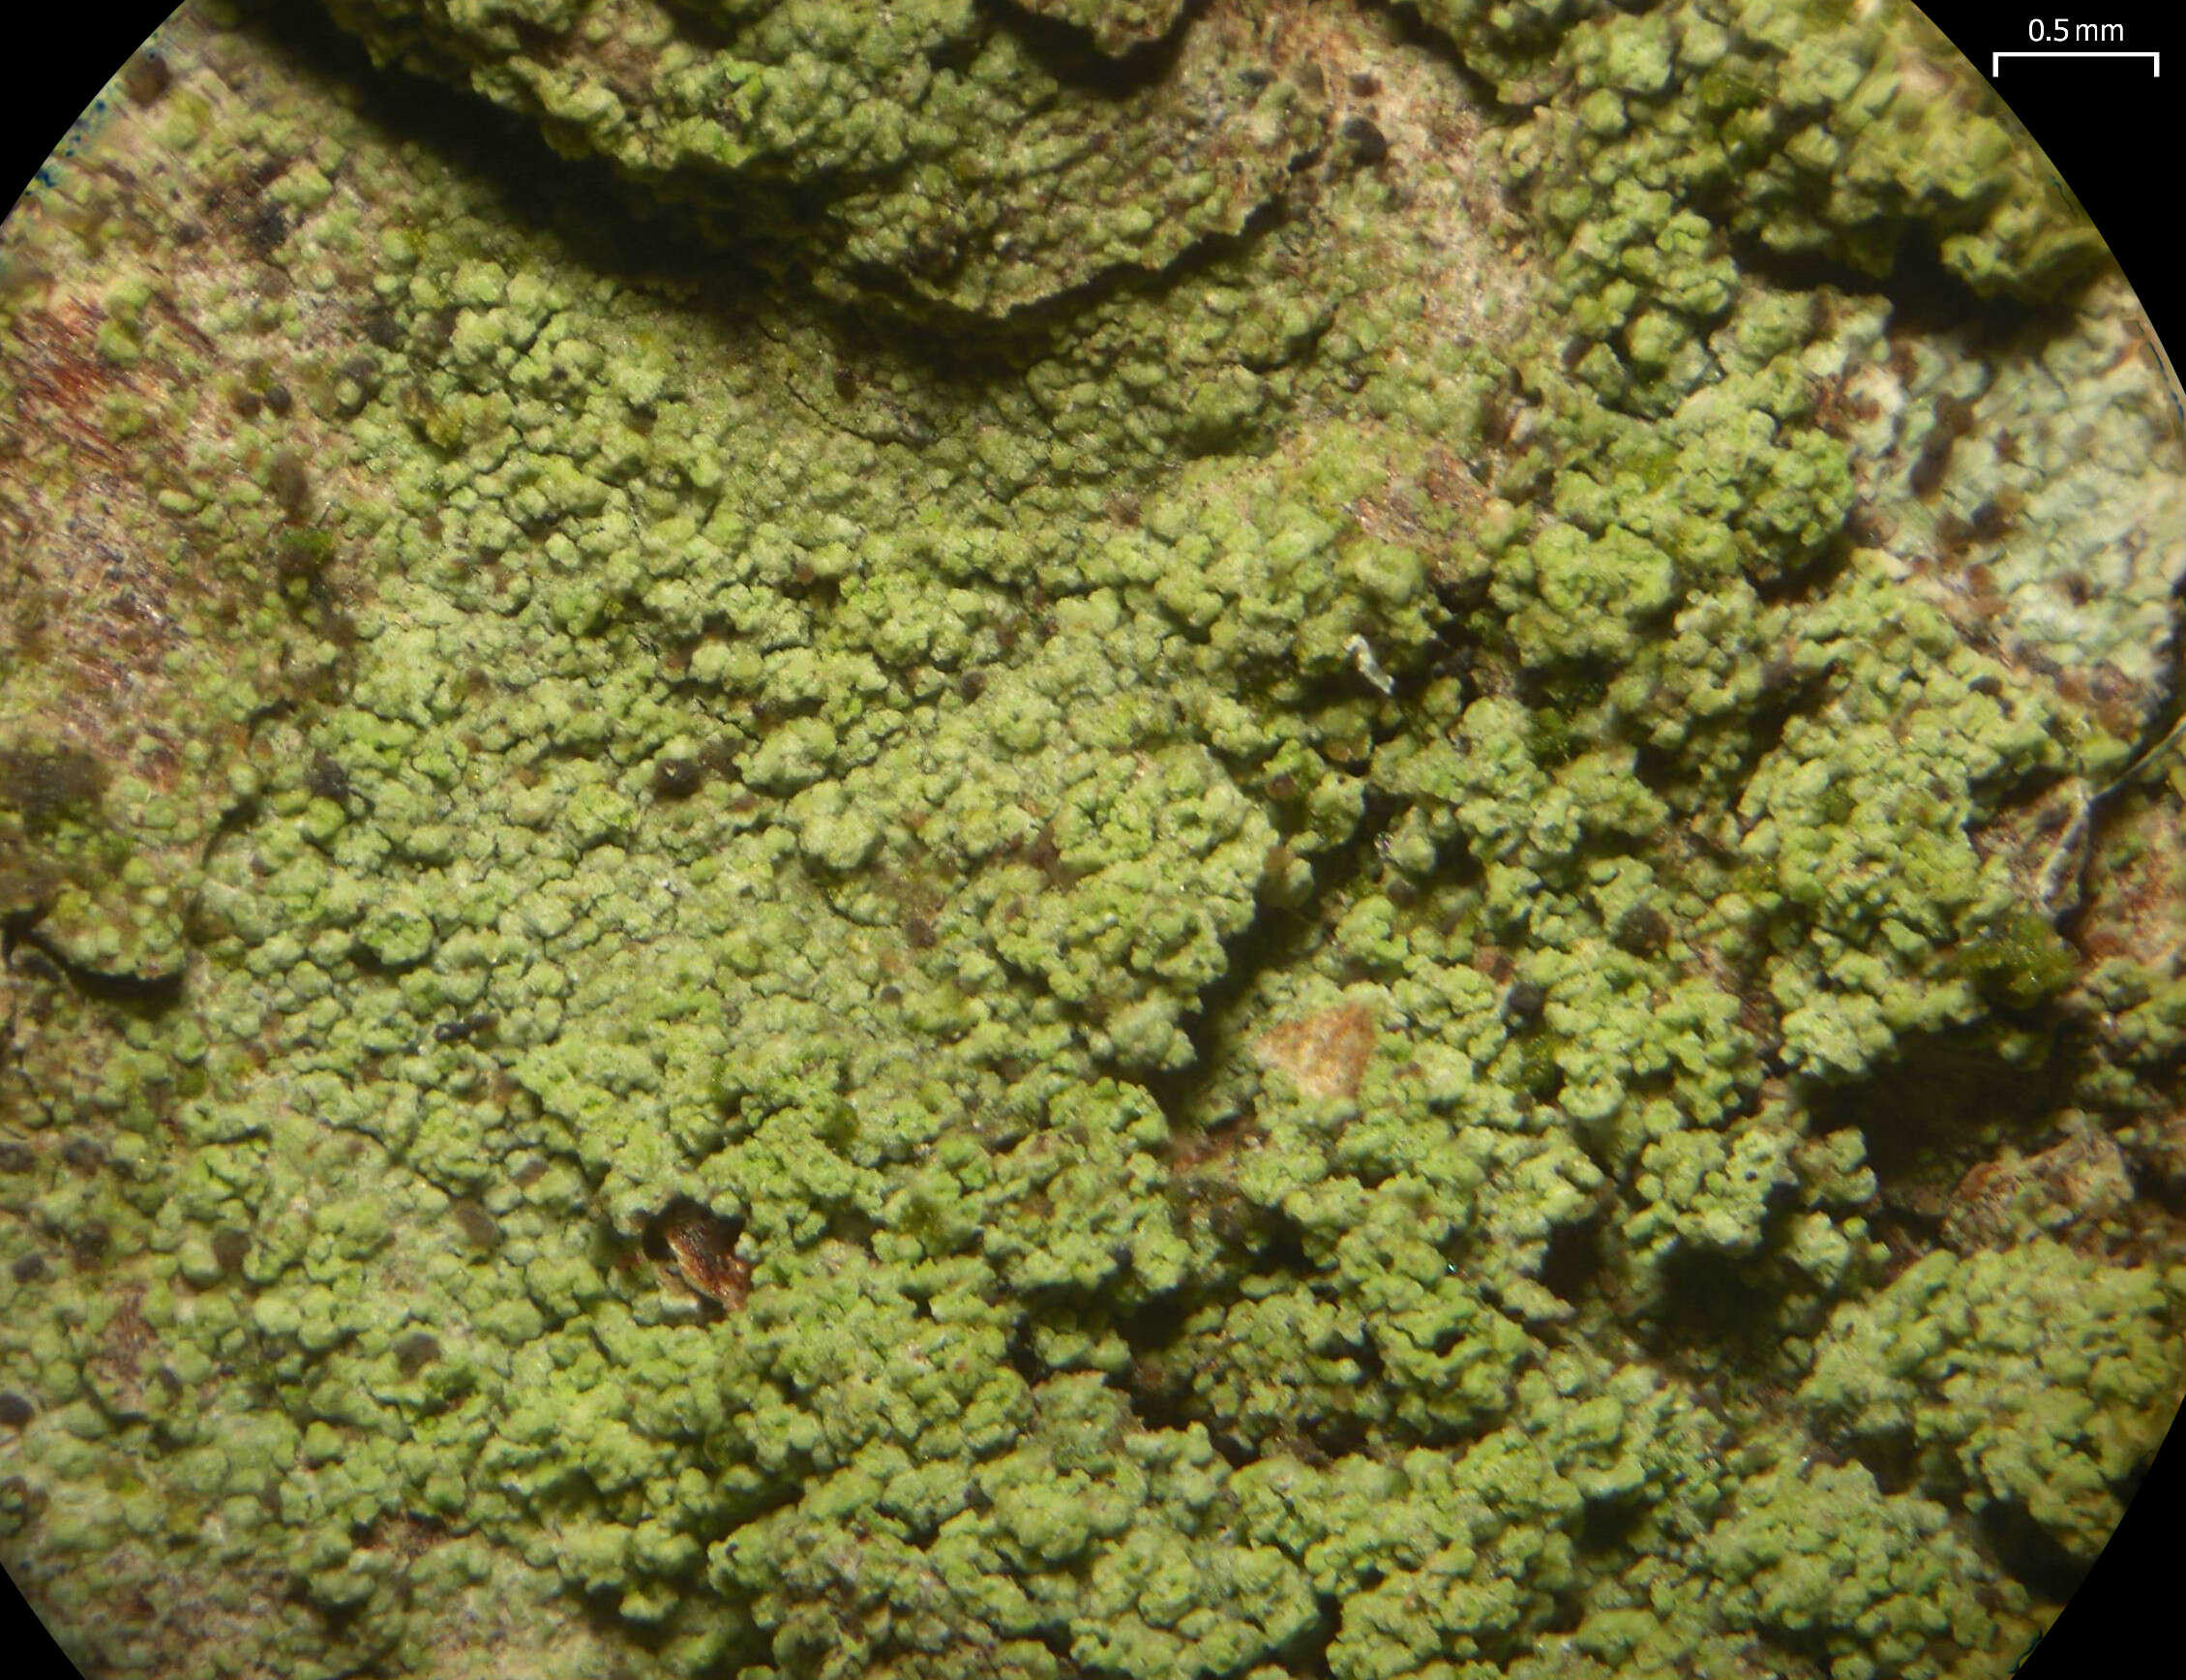 Image of ropalospora lichen